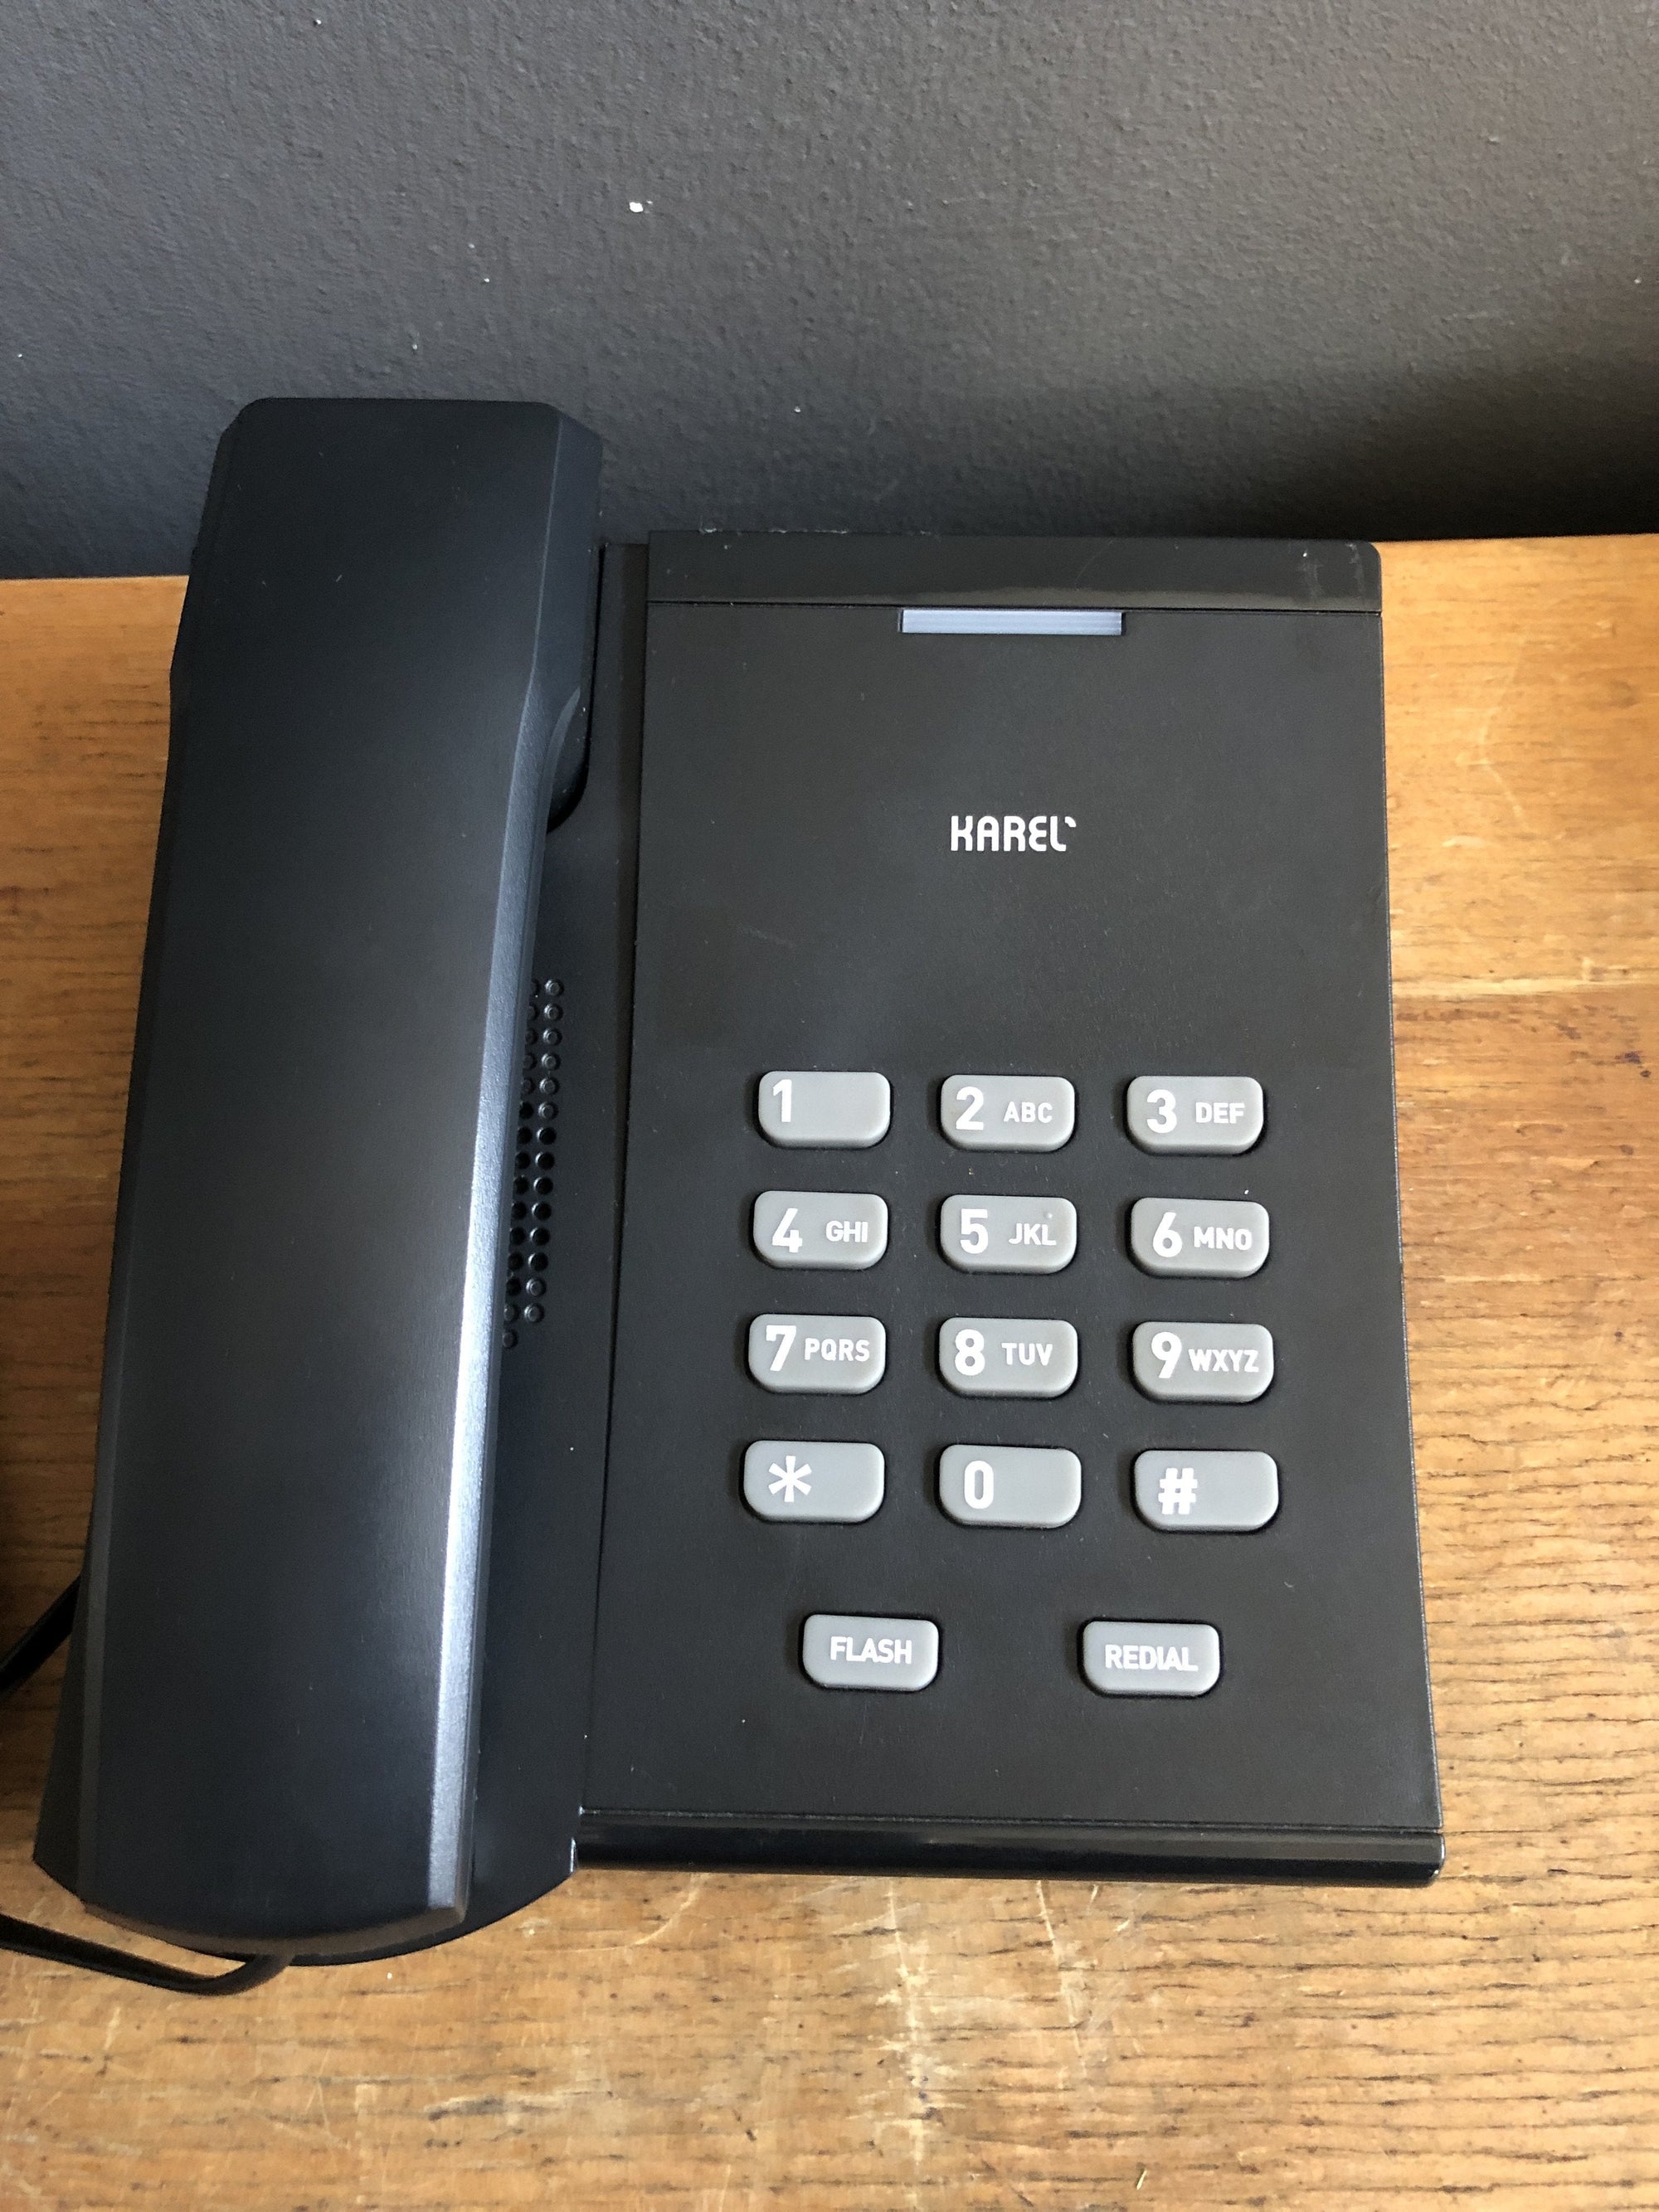 Karel Analog Phone (Tm115) - 2ndhandwarehouse.com